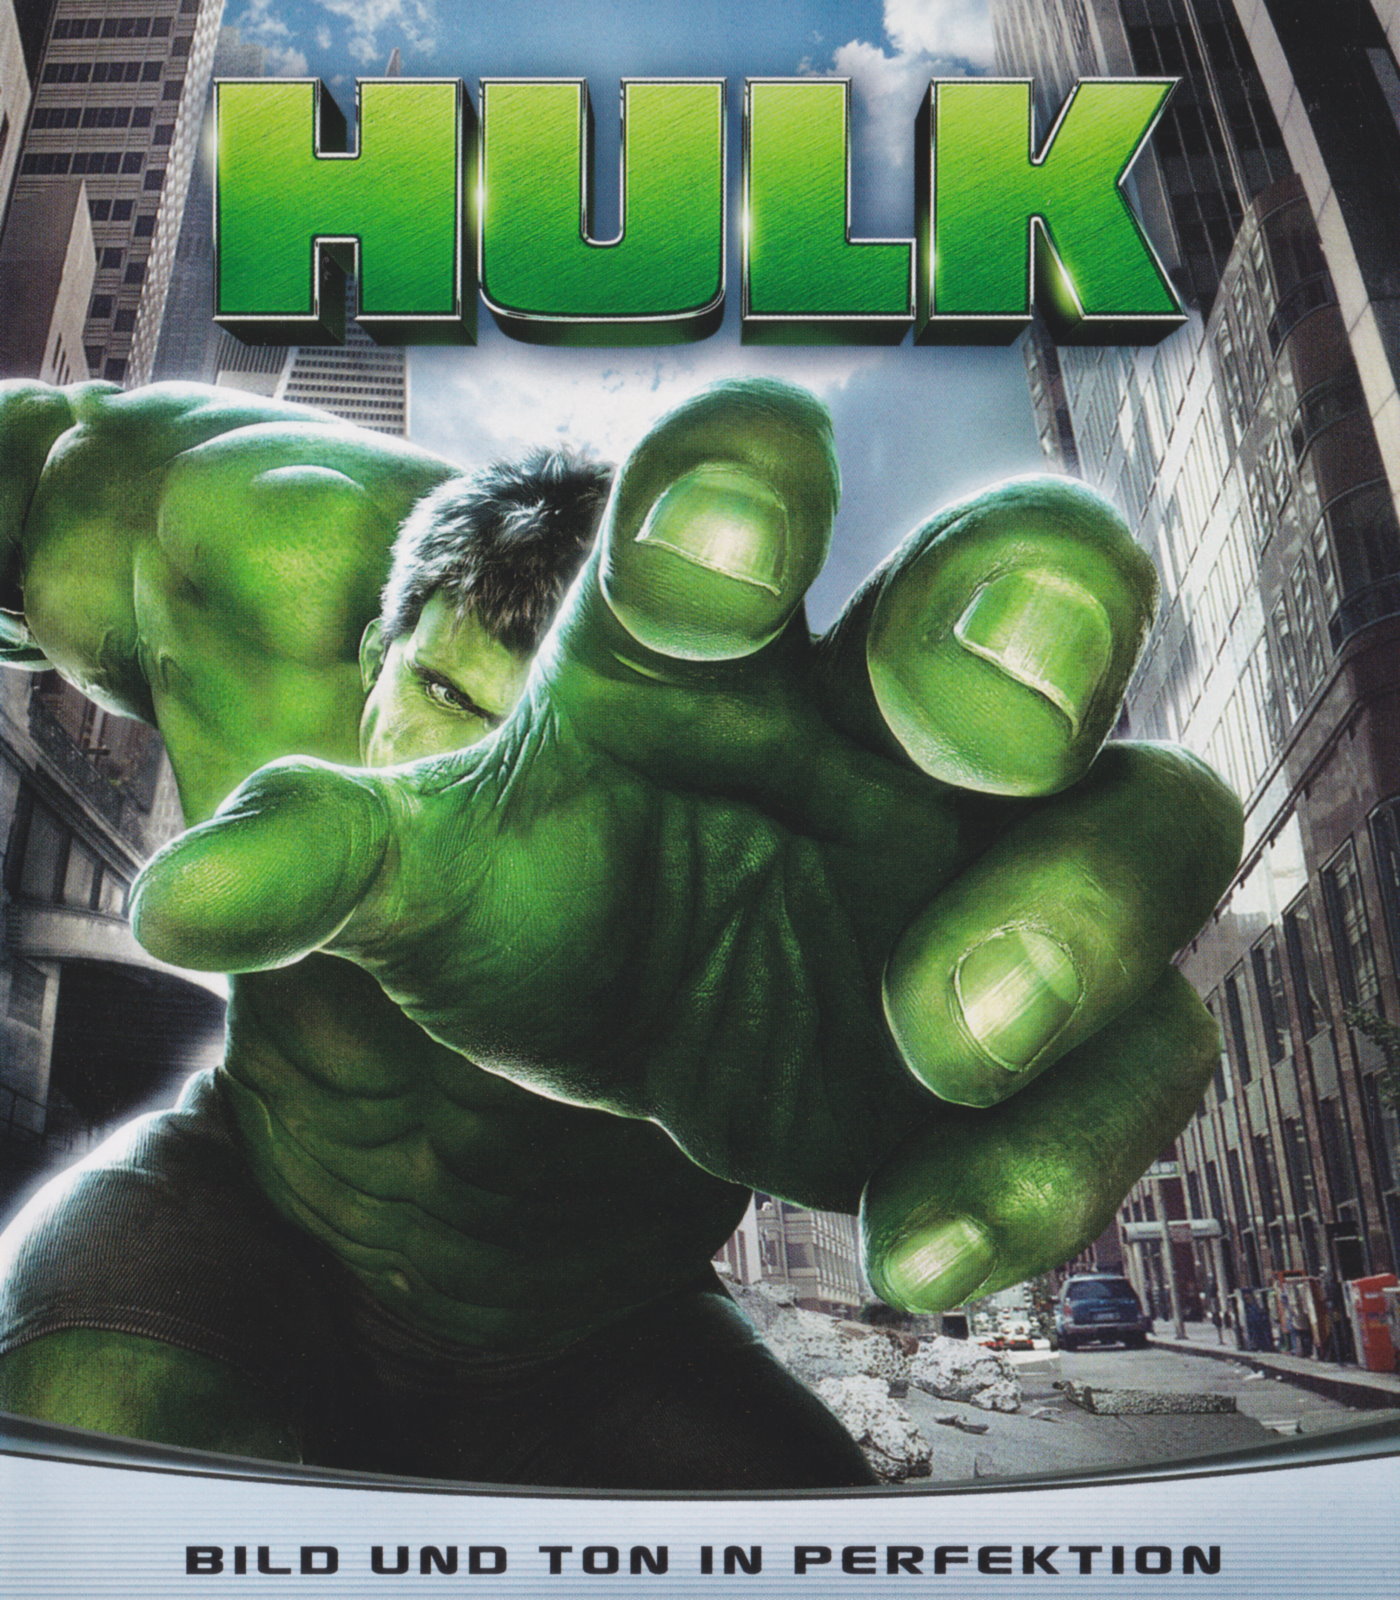 Cover - Hulk.jpg